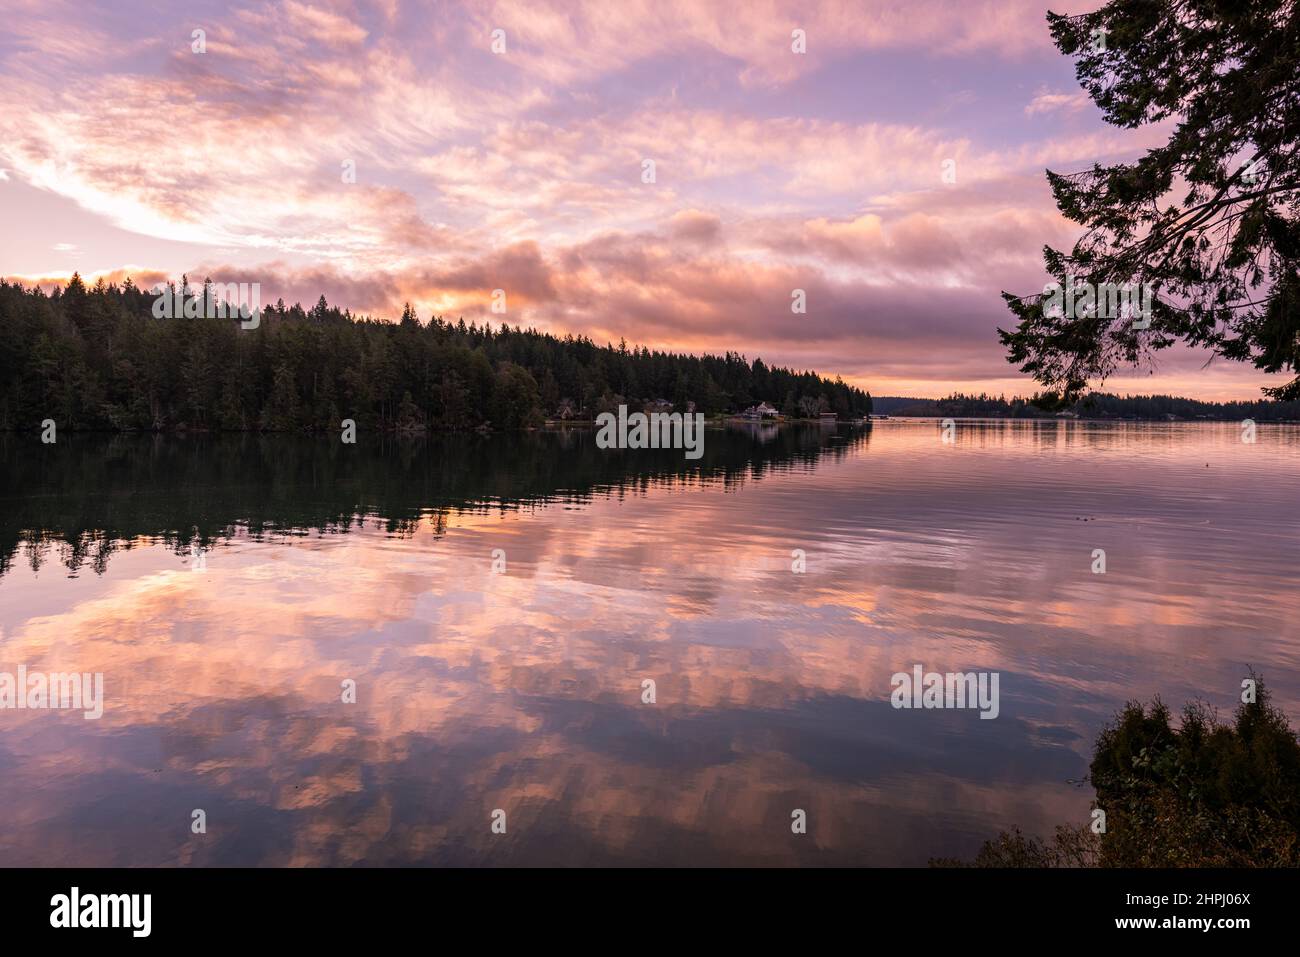 Farbenfrohe, friedliche Sonnenaufgangshimmel-Spiegelungen über Wald und Wasser auf dem Puget Sound, Washington State, Pacific Northwest Stockfoto